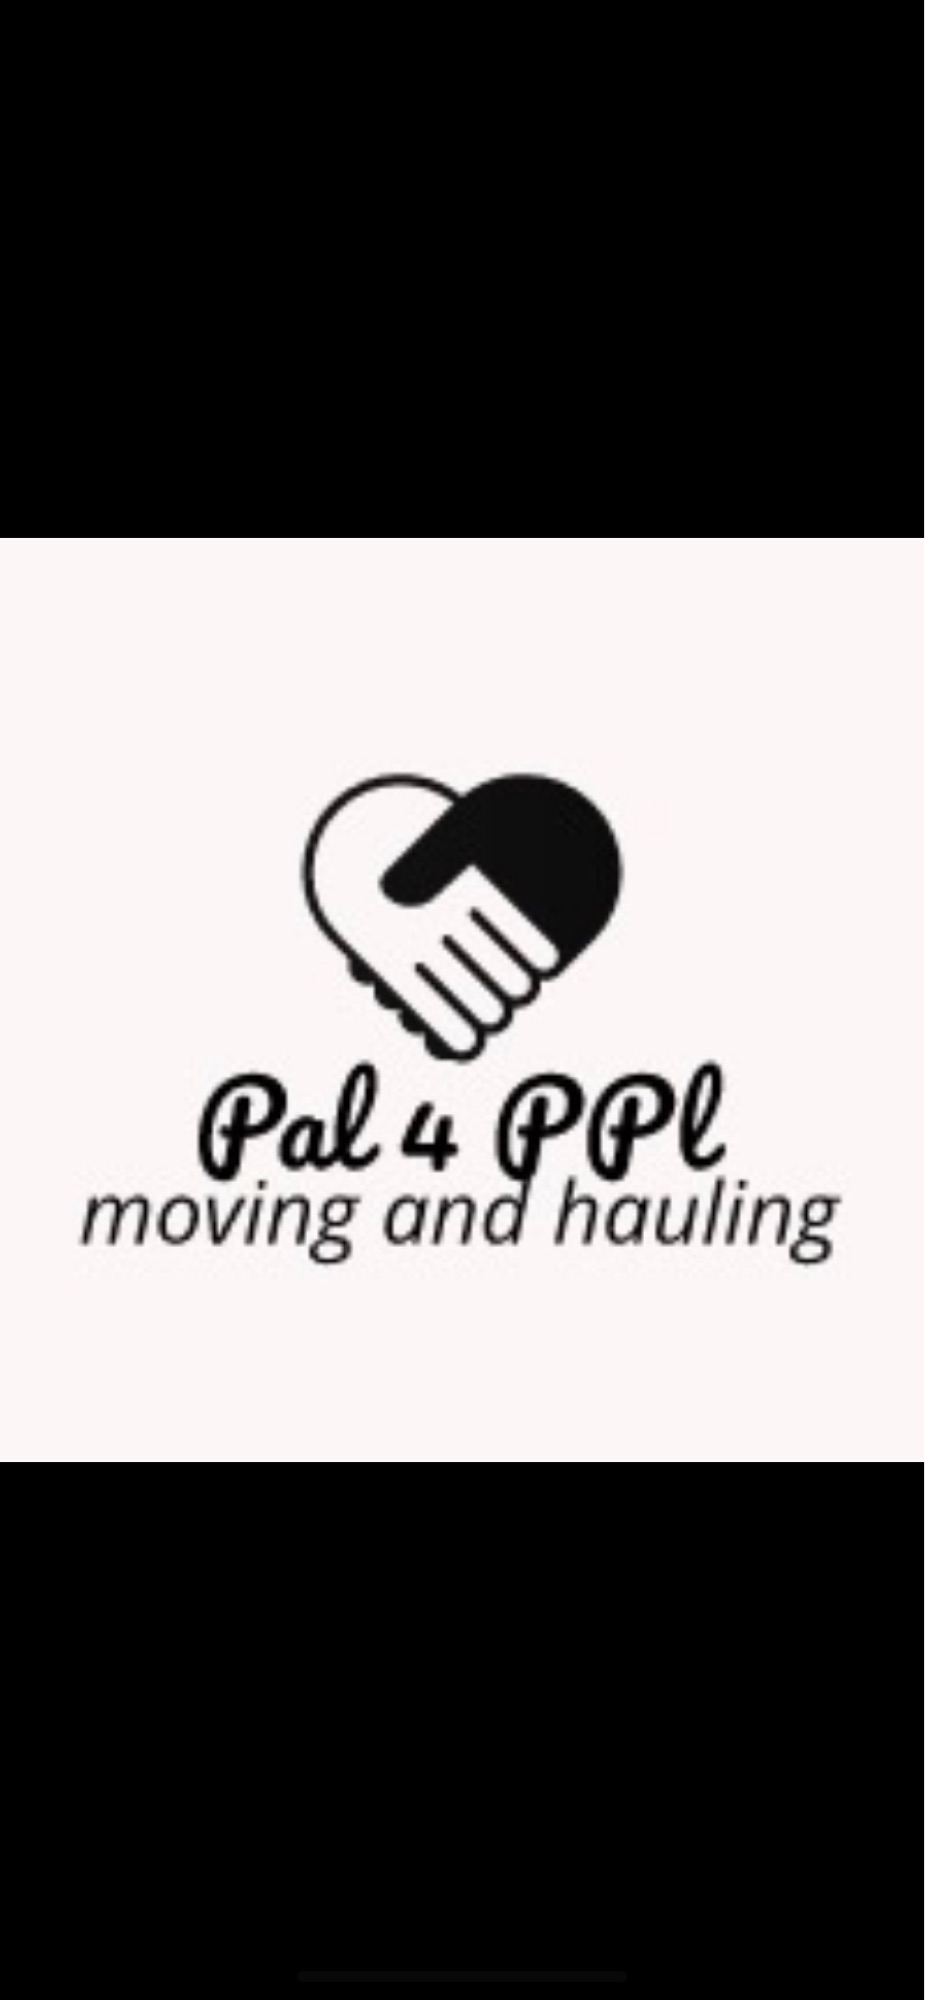 Pal 4 Ppl Logo